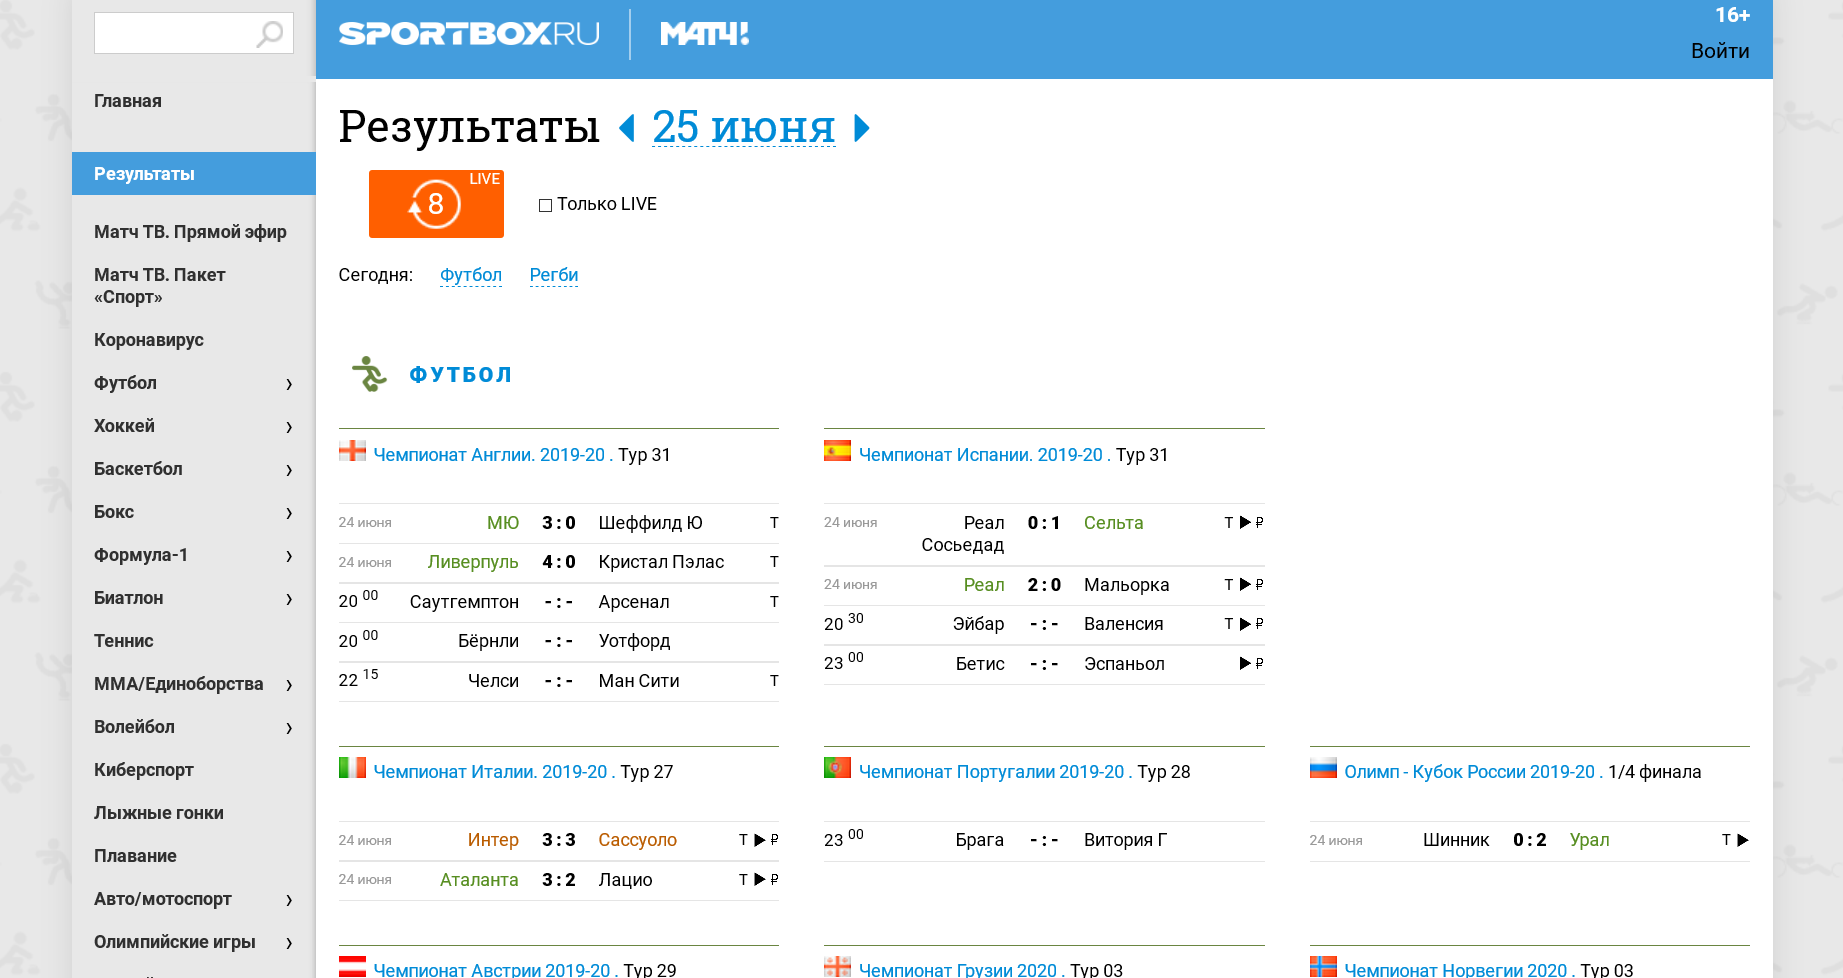 раздел с результатами событий / sportbox.ru